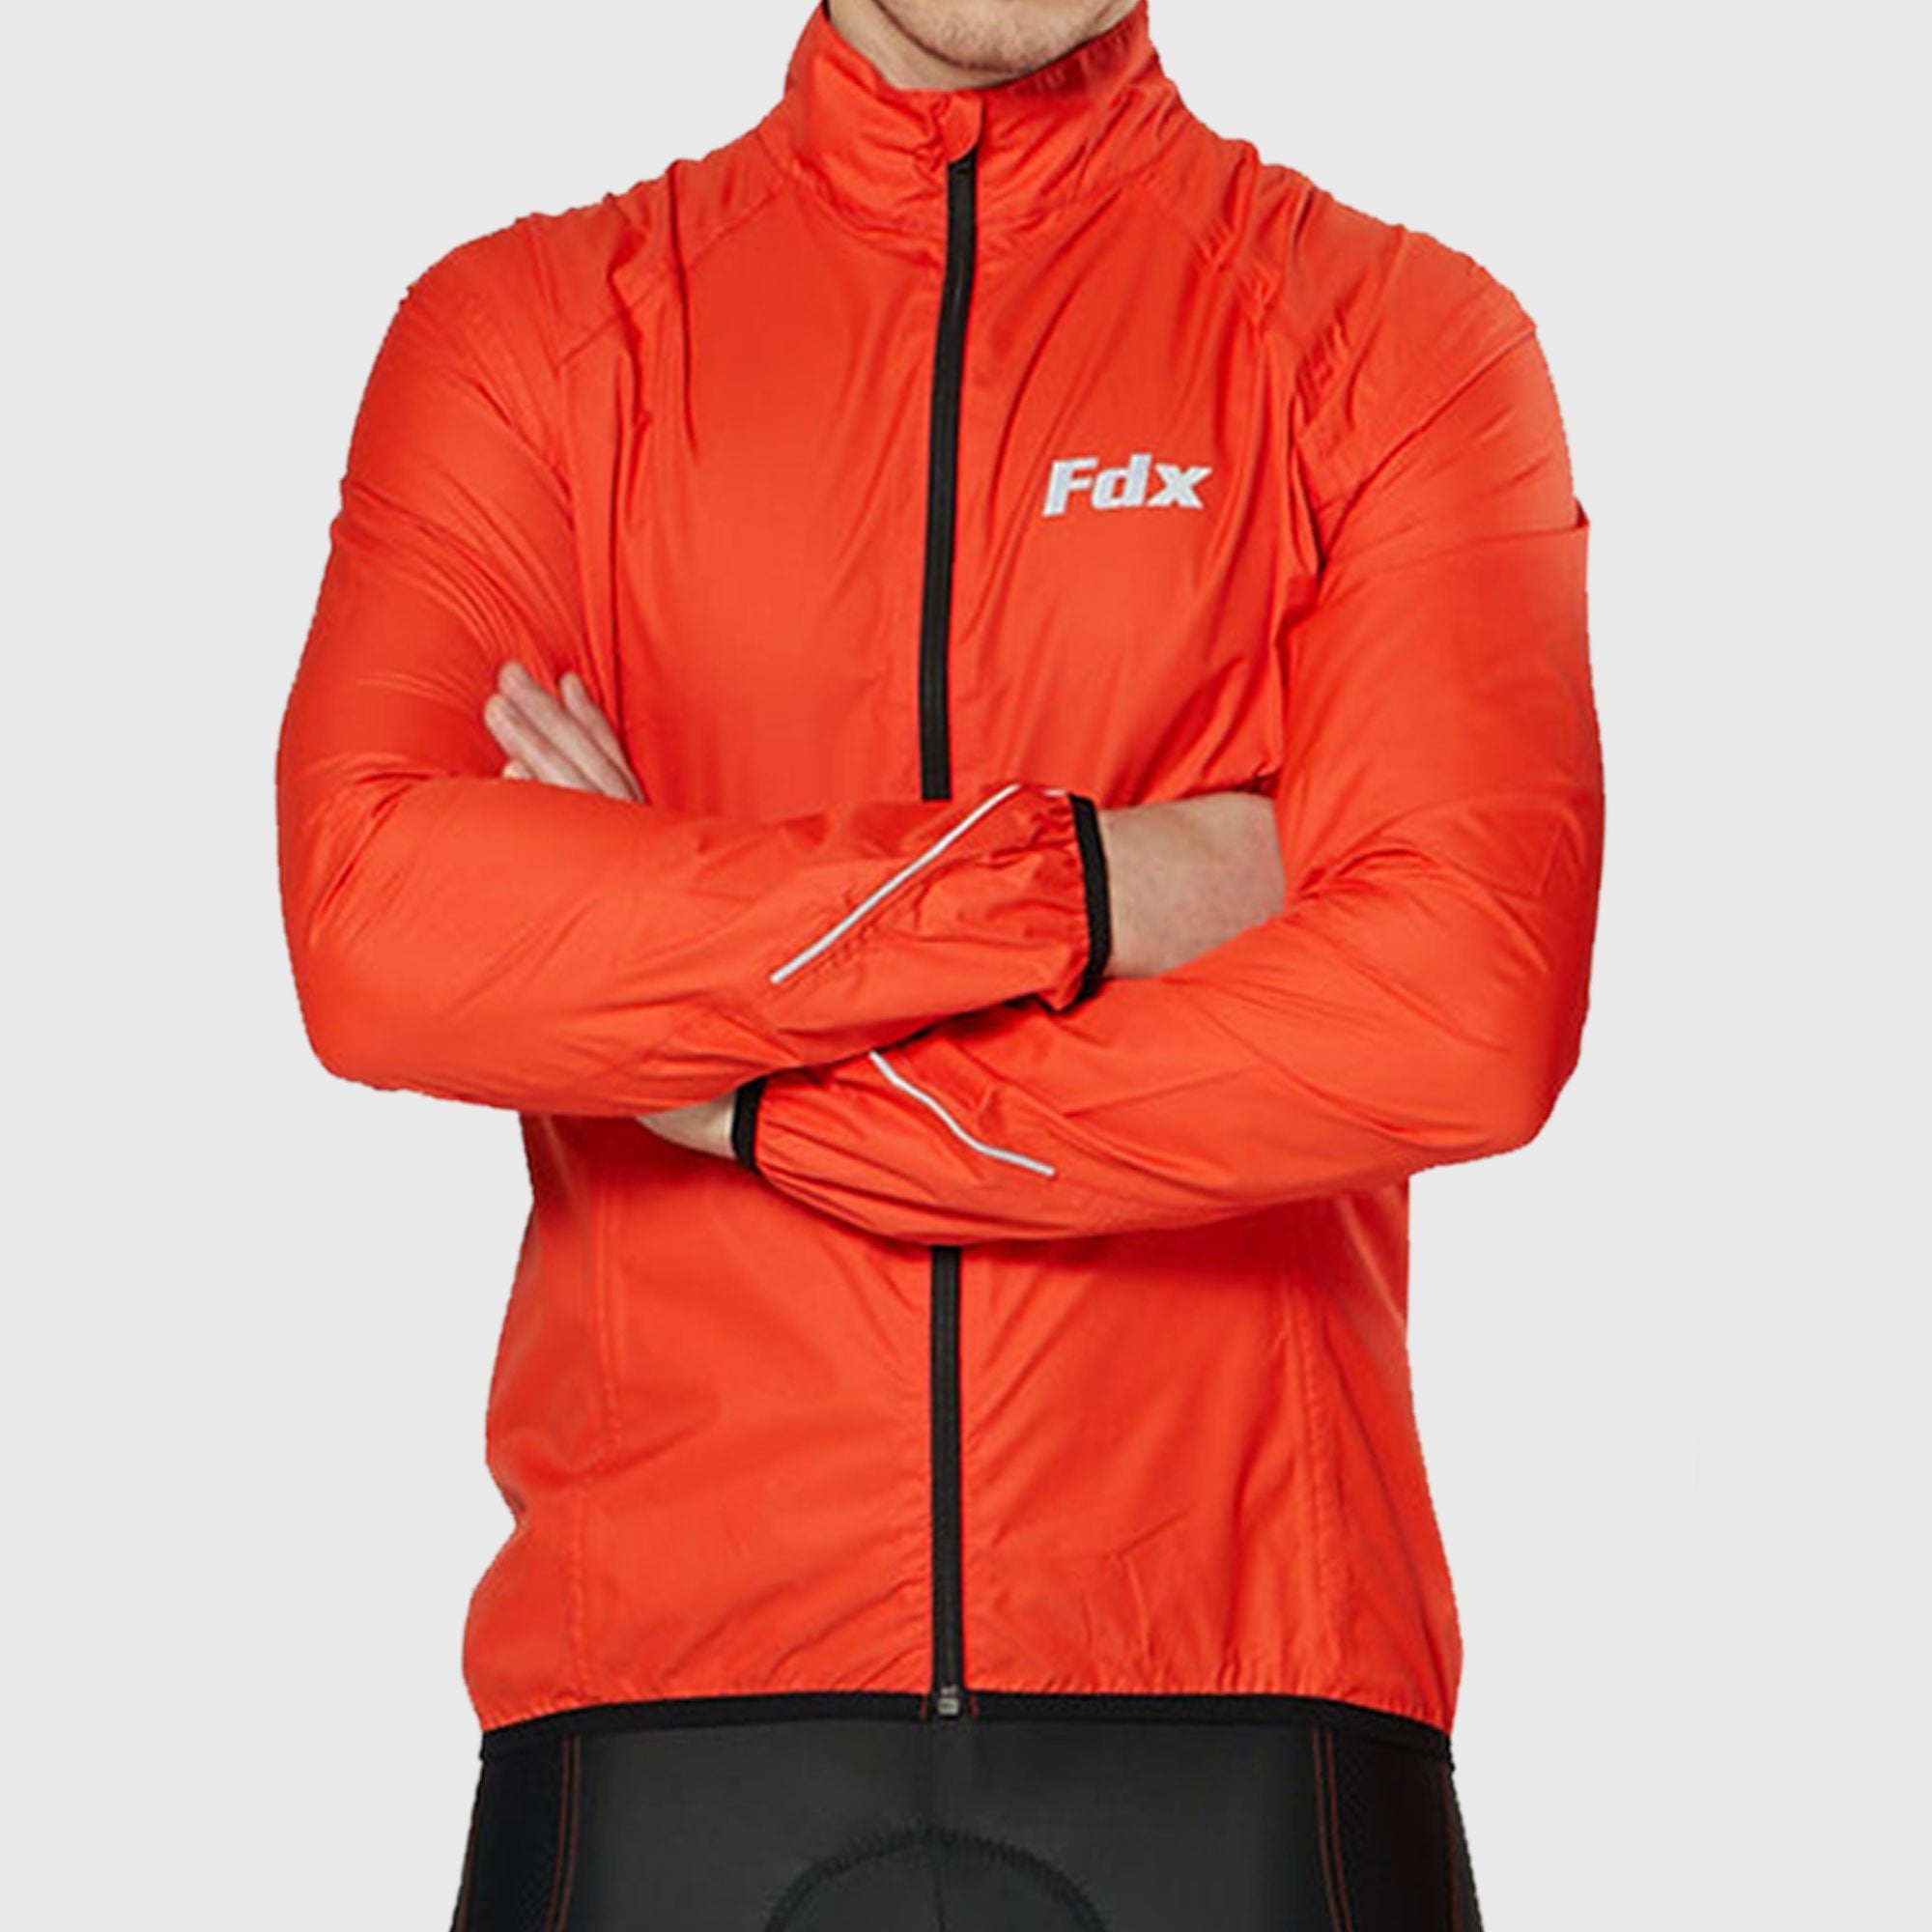 Fdx J20 Red Windproof & Waterproof Men's Cycling Jacket